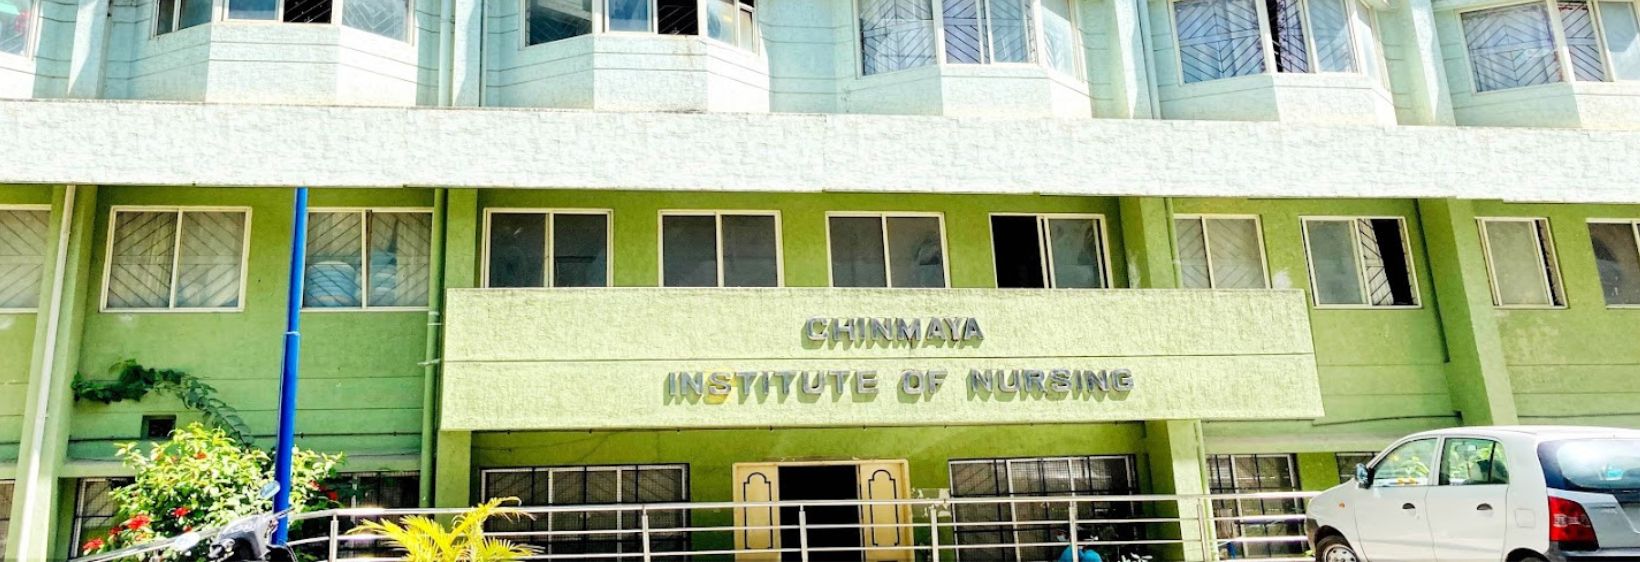 Chinmaya Institute of Nursing - Bangalore